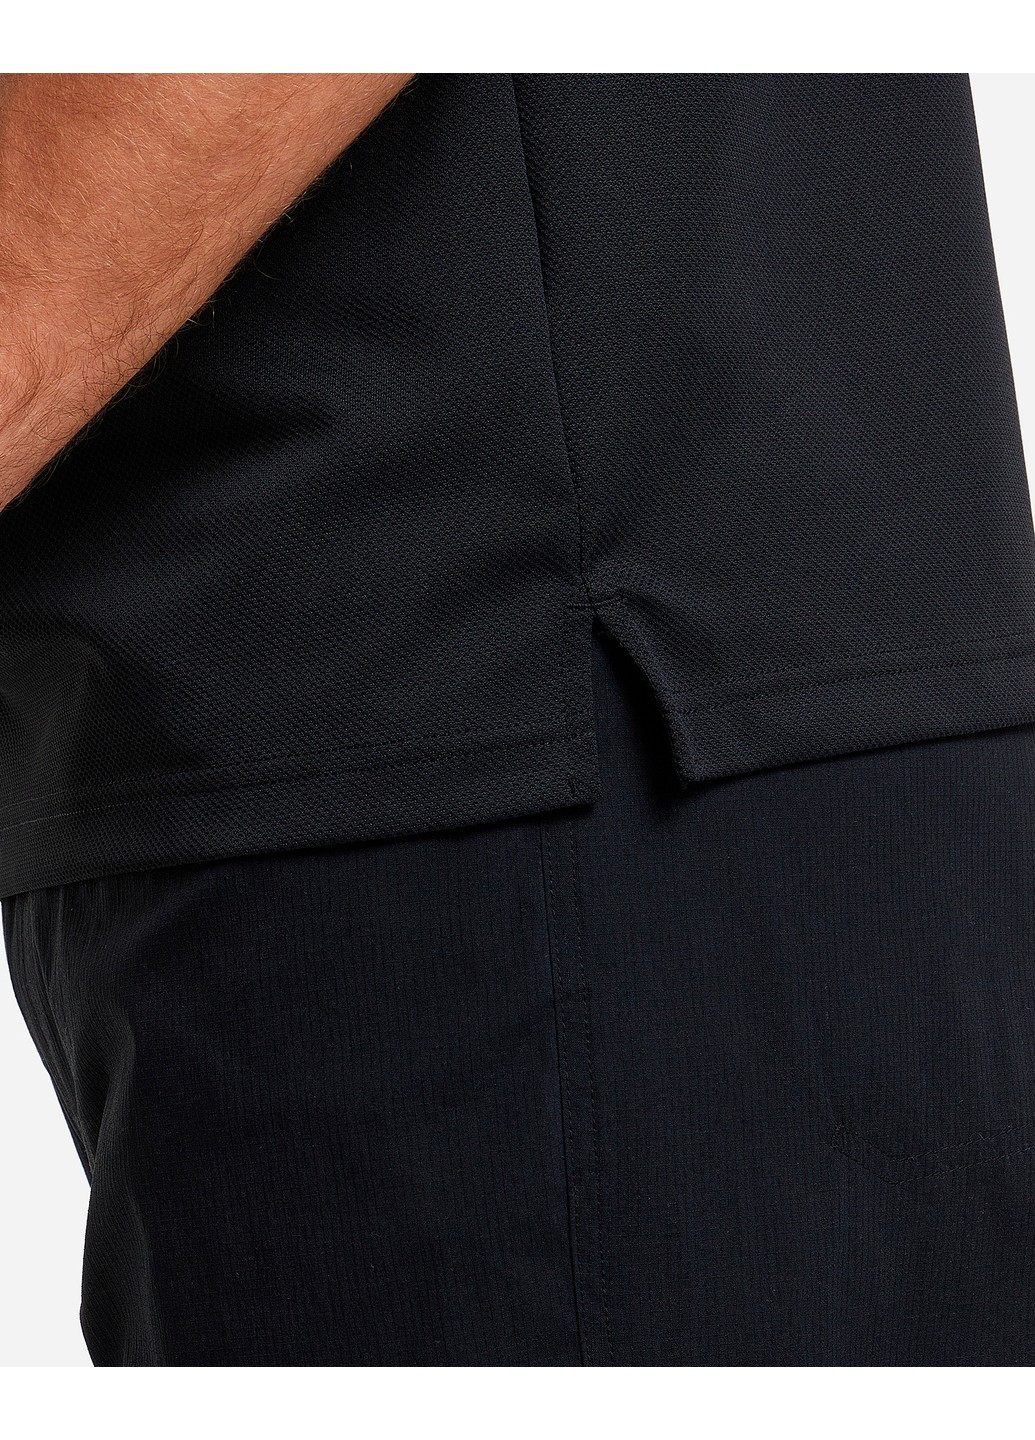 Черная футболка-1772055-010 m рубашка-поло мужская utilizer™ polo черный р.m для мужчин Columbia